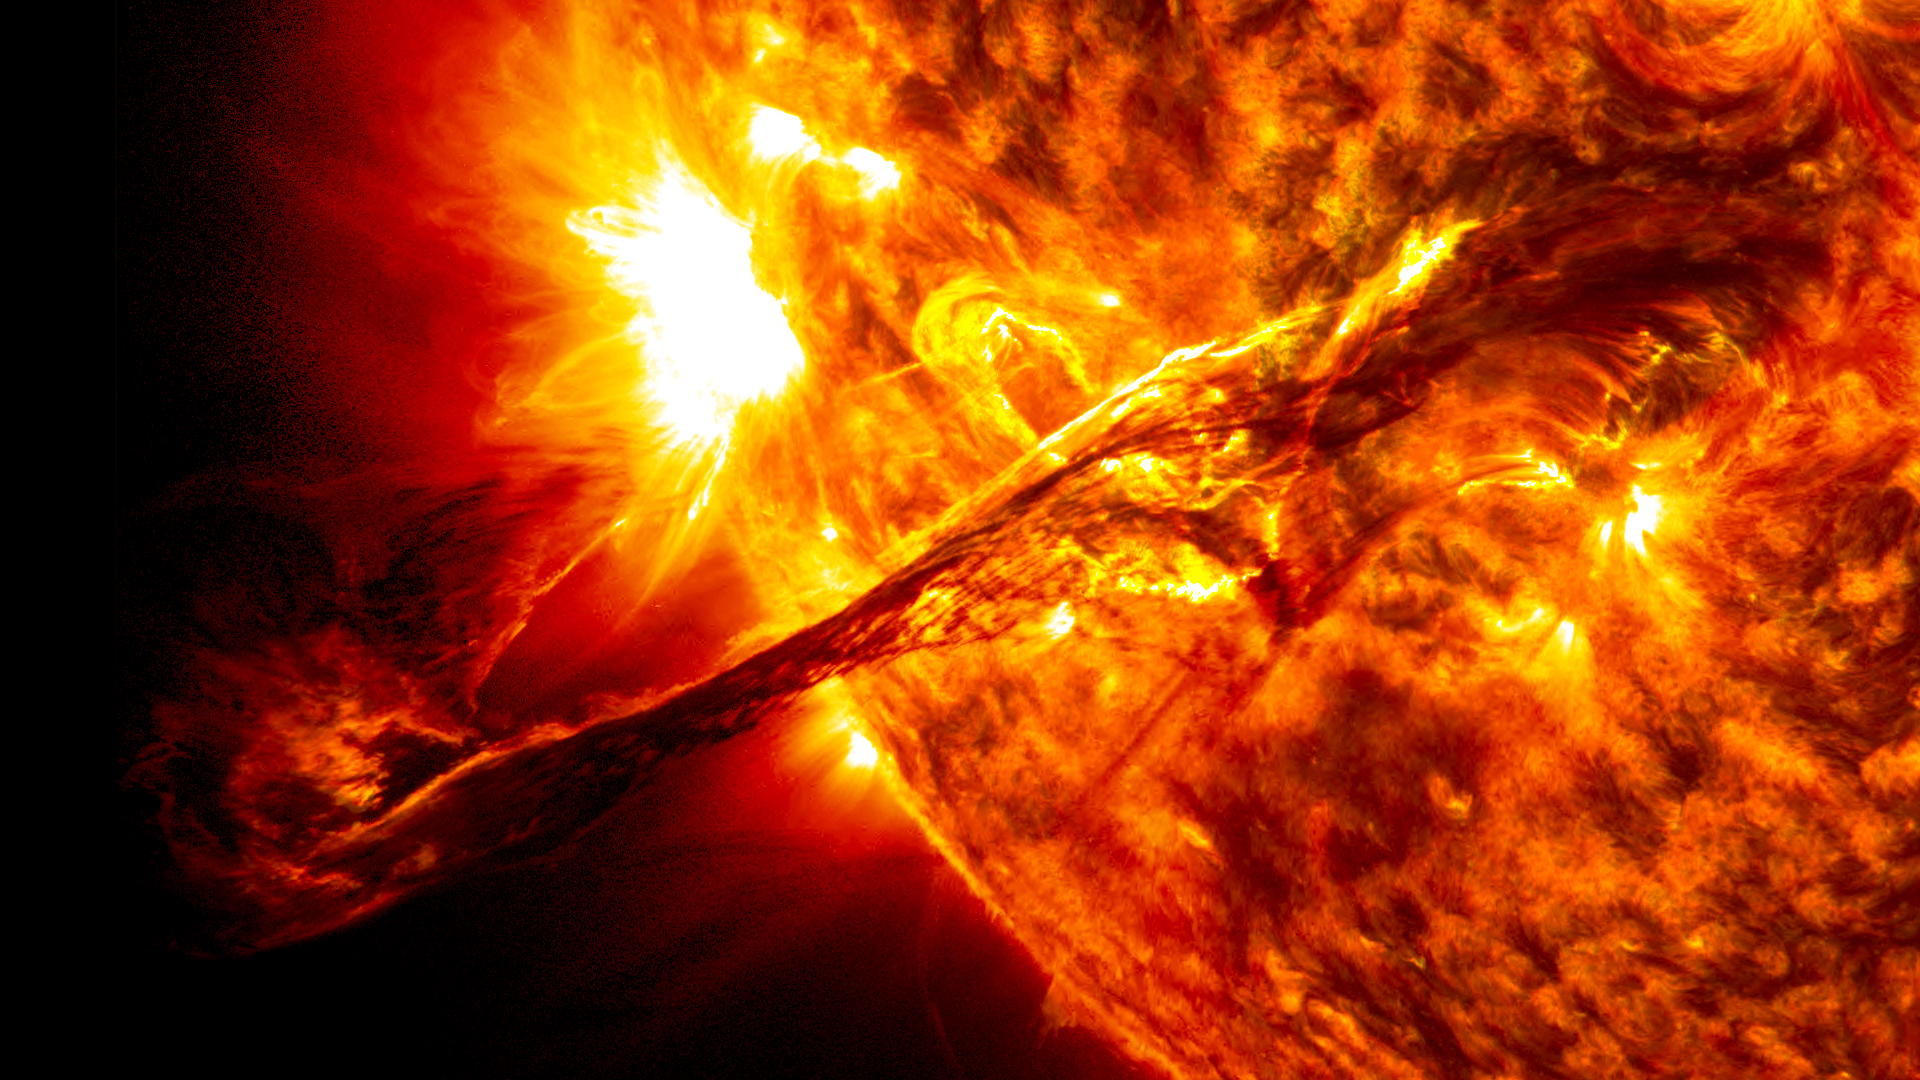 Éjection de masse coronale observée par le satellite SDO le 31 août 2012. © Nasa, SDO